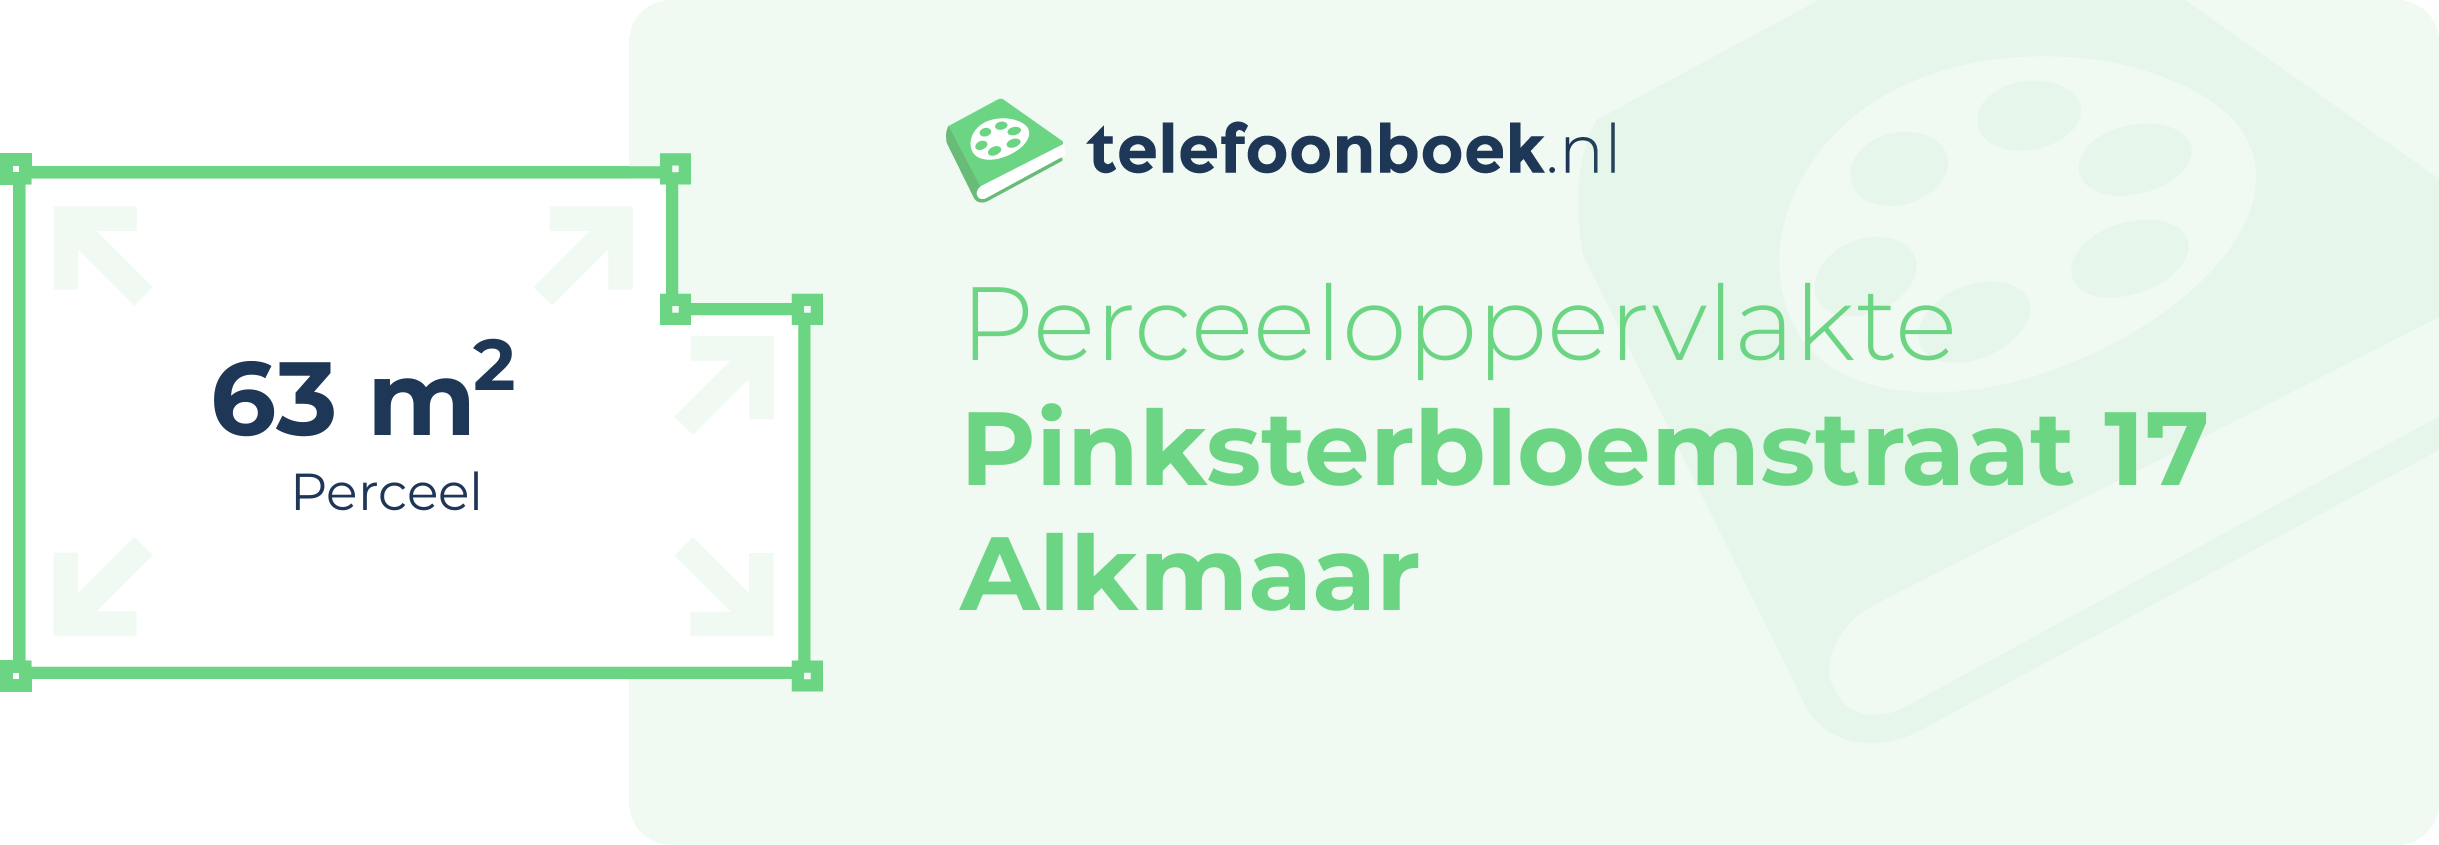 Perceeloppervlakte Pinksterbloemstraat 17 Alkmaar